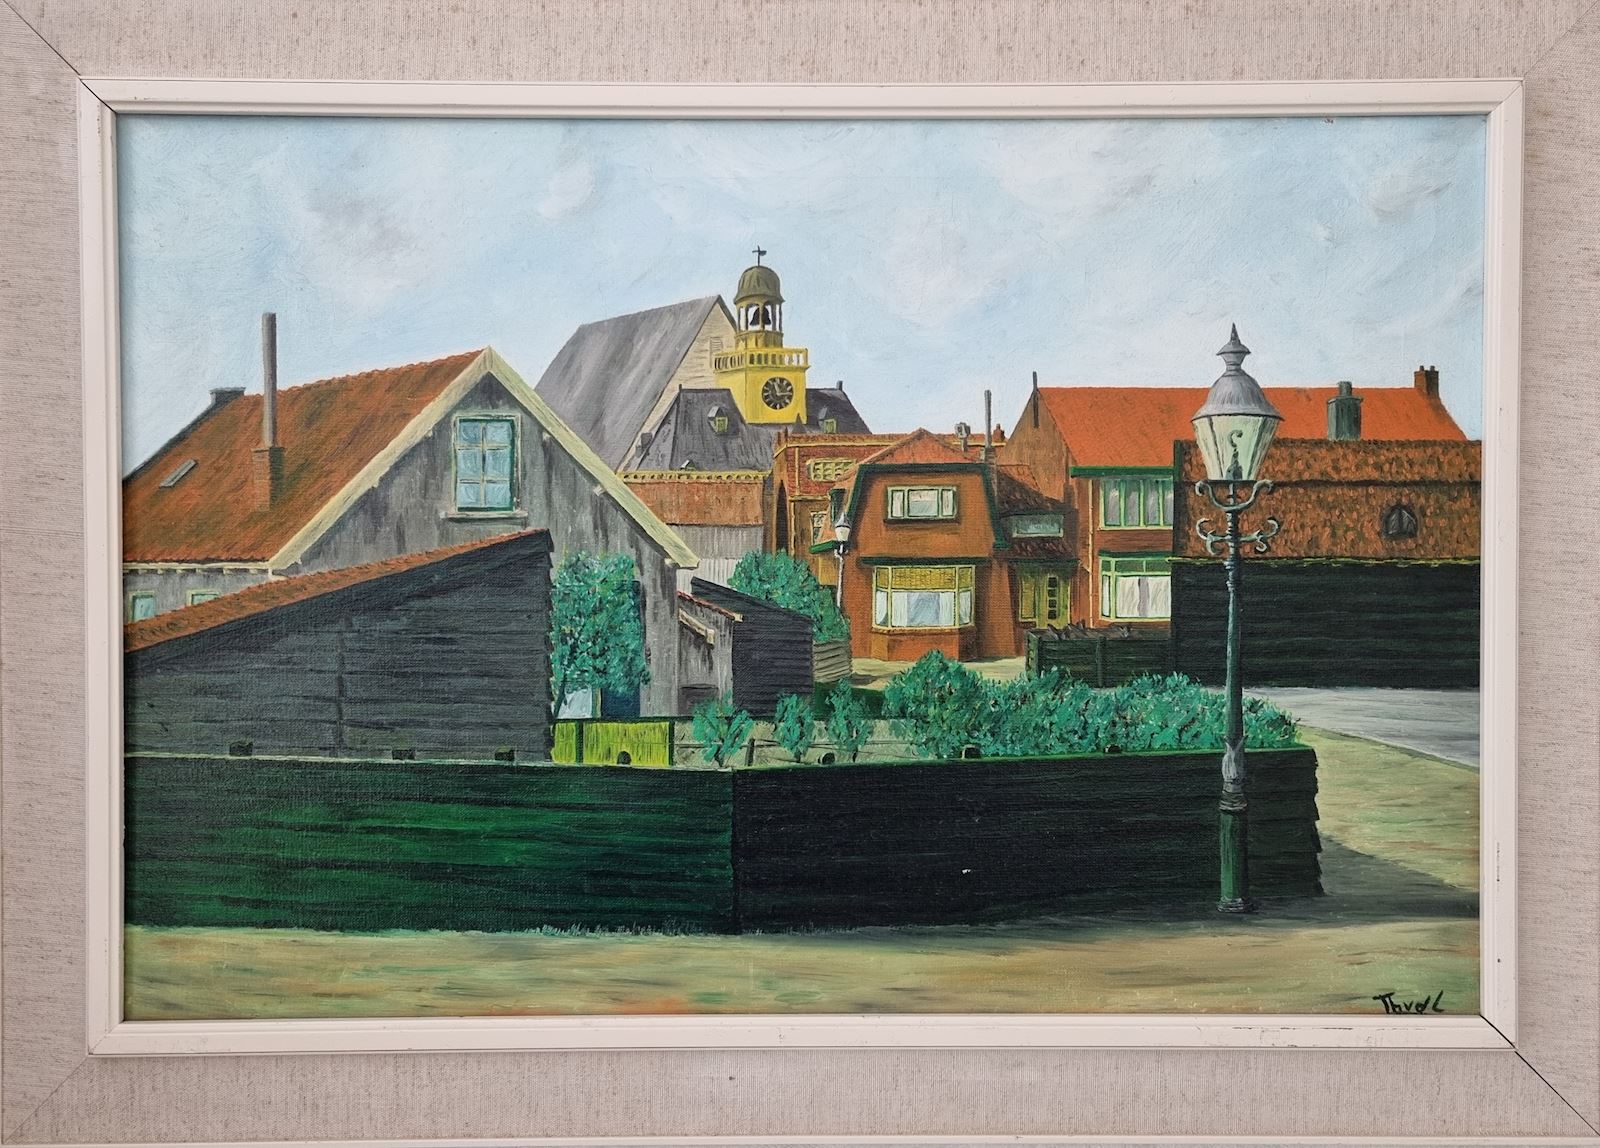 Noordwijk Theo van der linden aan zee hoofdstraat huis ter duin straat schilderij kunst uit de kast